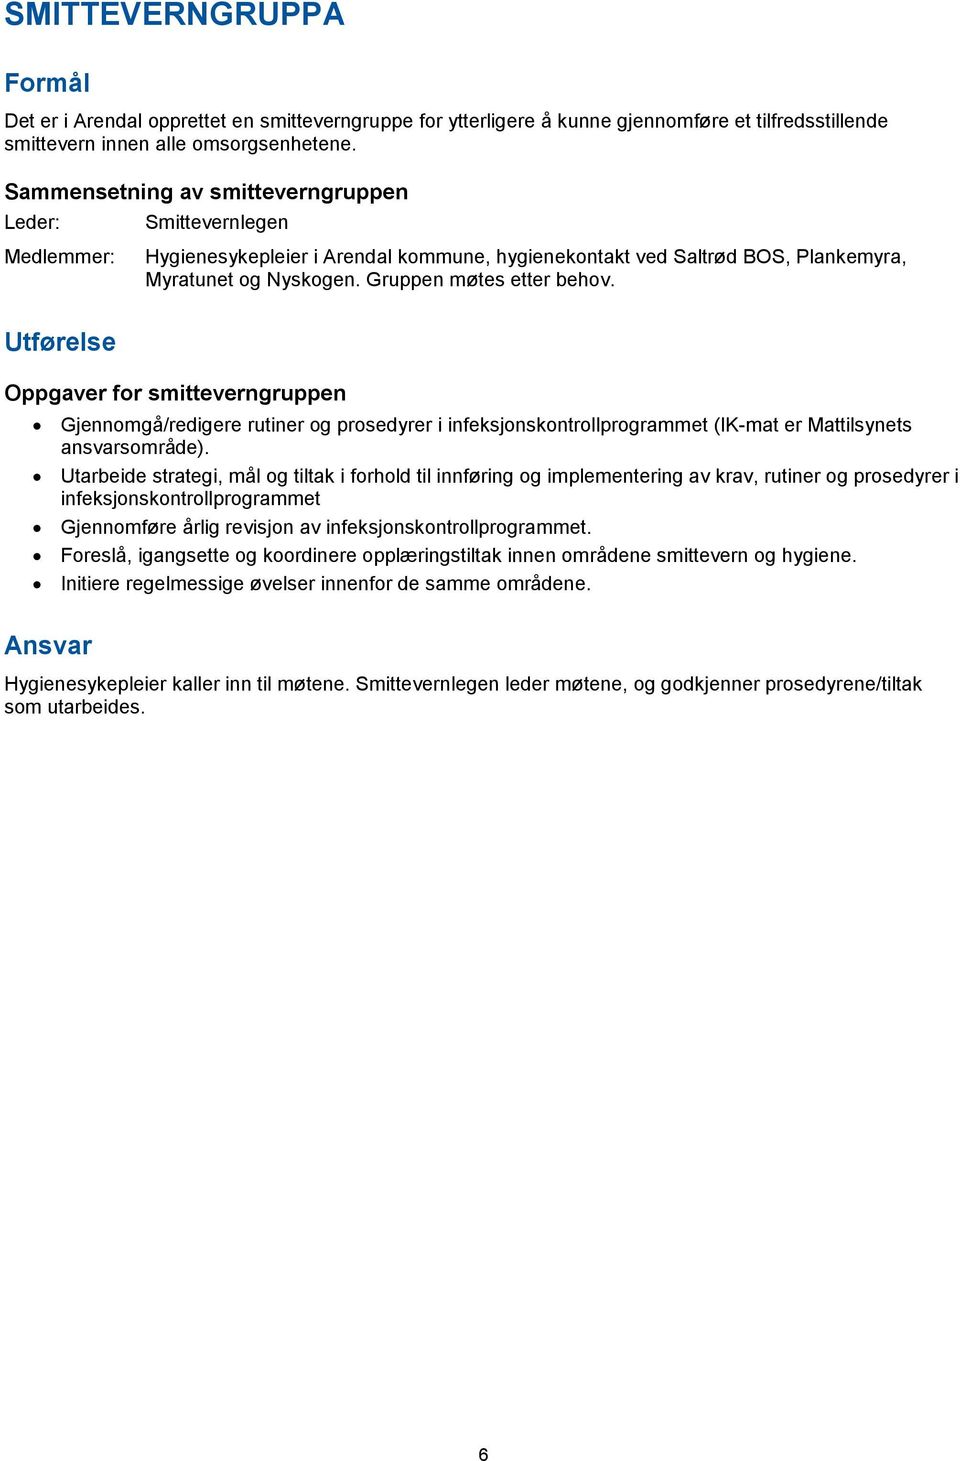 Utførelse Oppgaver for smitteverngruppen Gjennomgå/redigere rutiner og prosedyrer i infeksjonskontrollprogrammet (IK-mat er Mattilsynets ansvarsområde).